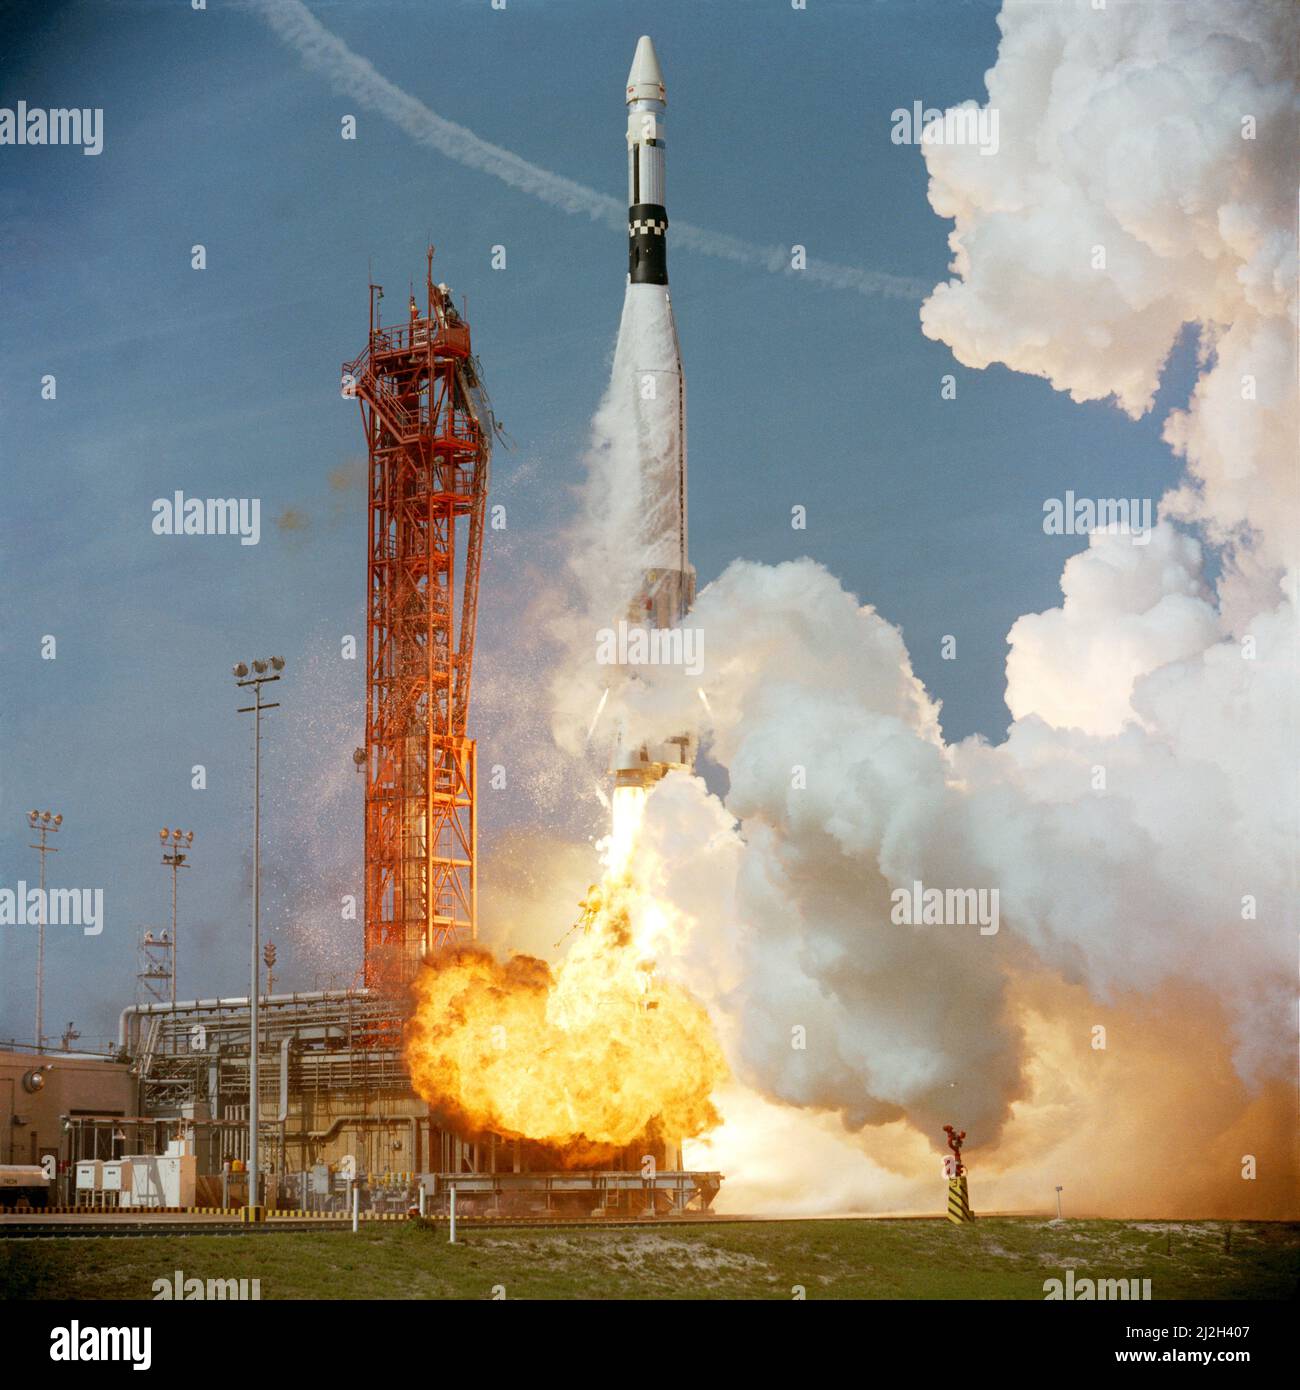 Il lancio del veicolo obiettivo Agena per la missione Gemini 8. L'equipaggio di volo per la missione di 3 giorni, gli astronauti Neil A. Armstrong e David R. Scott, hanno raggiunto il primo appuntamento e attracco ad Atlas/Agena in orbita terrestre. Foto Stock